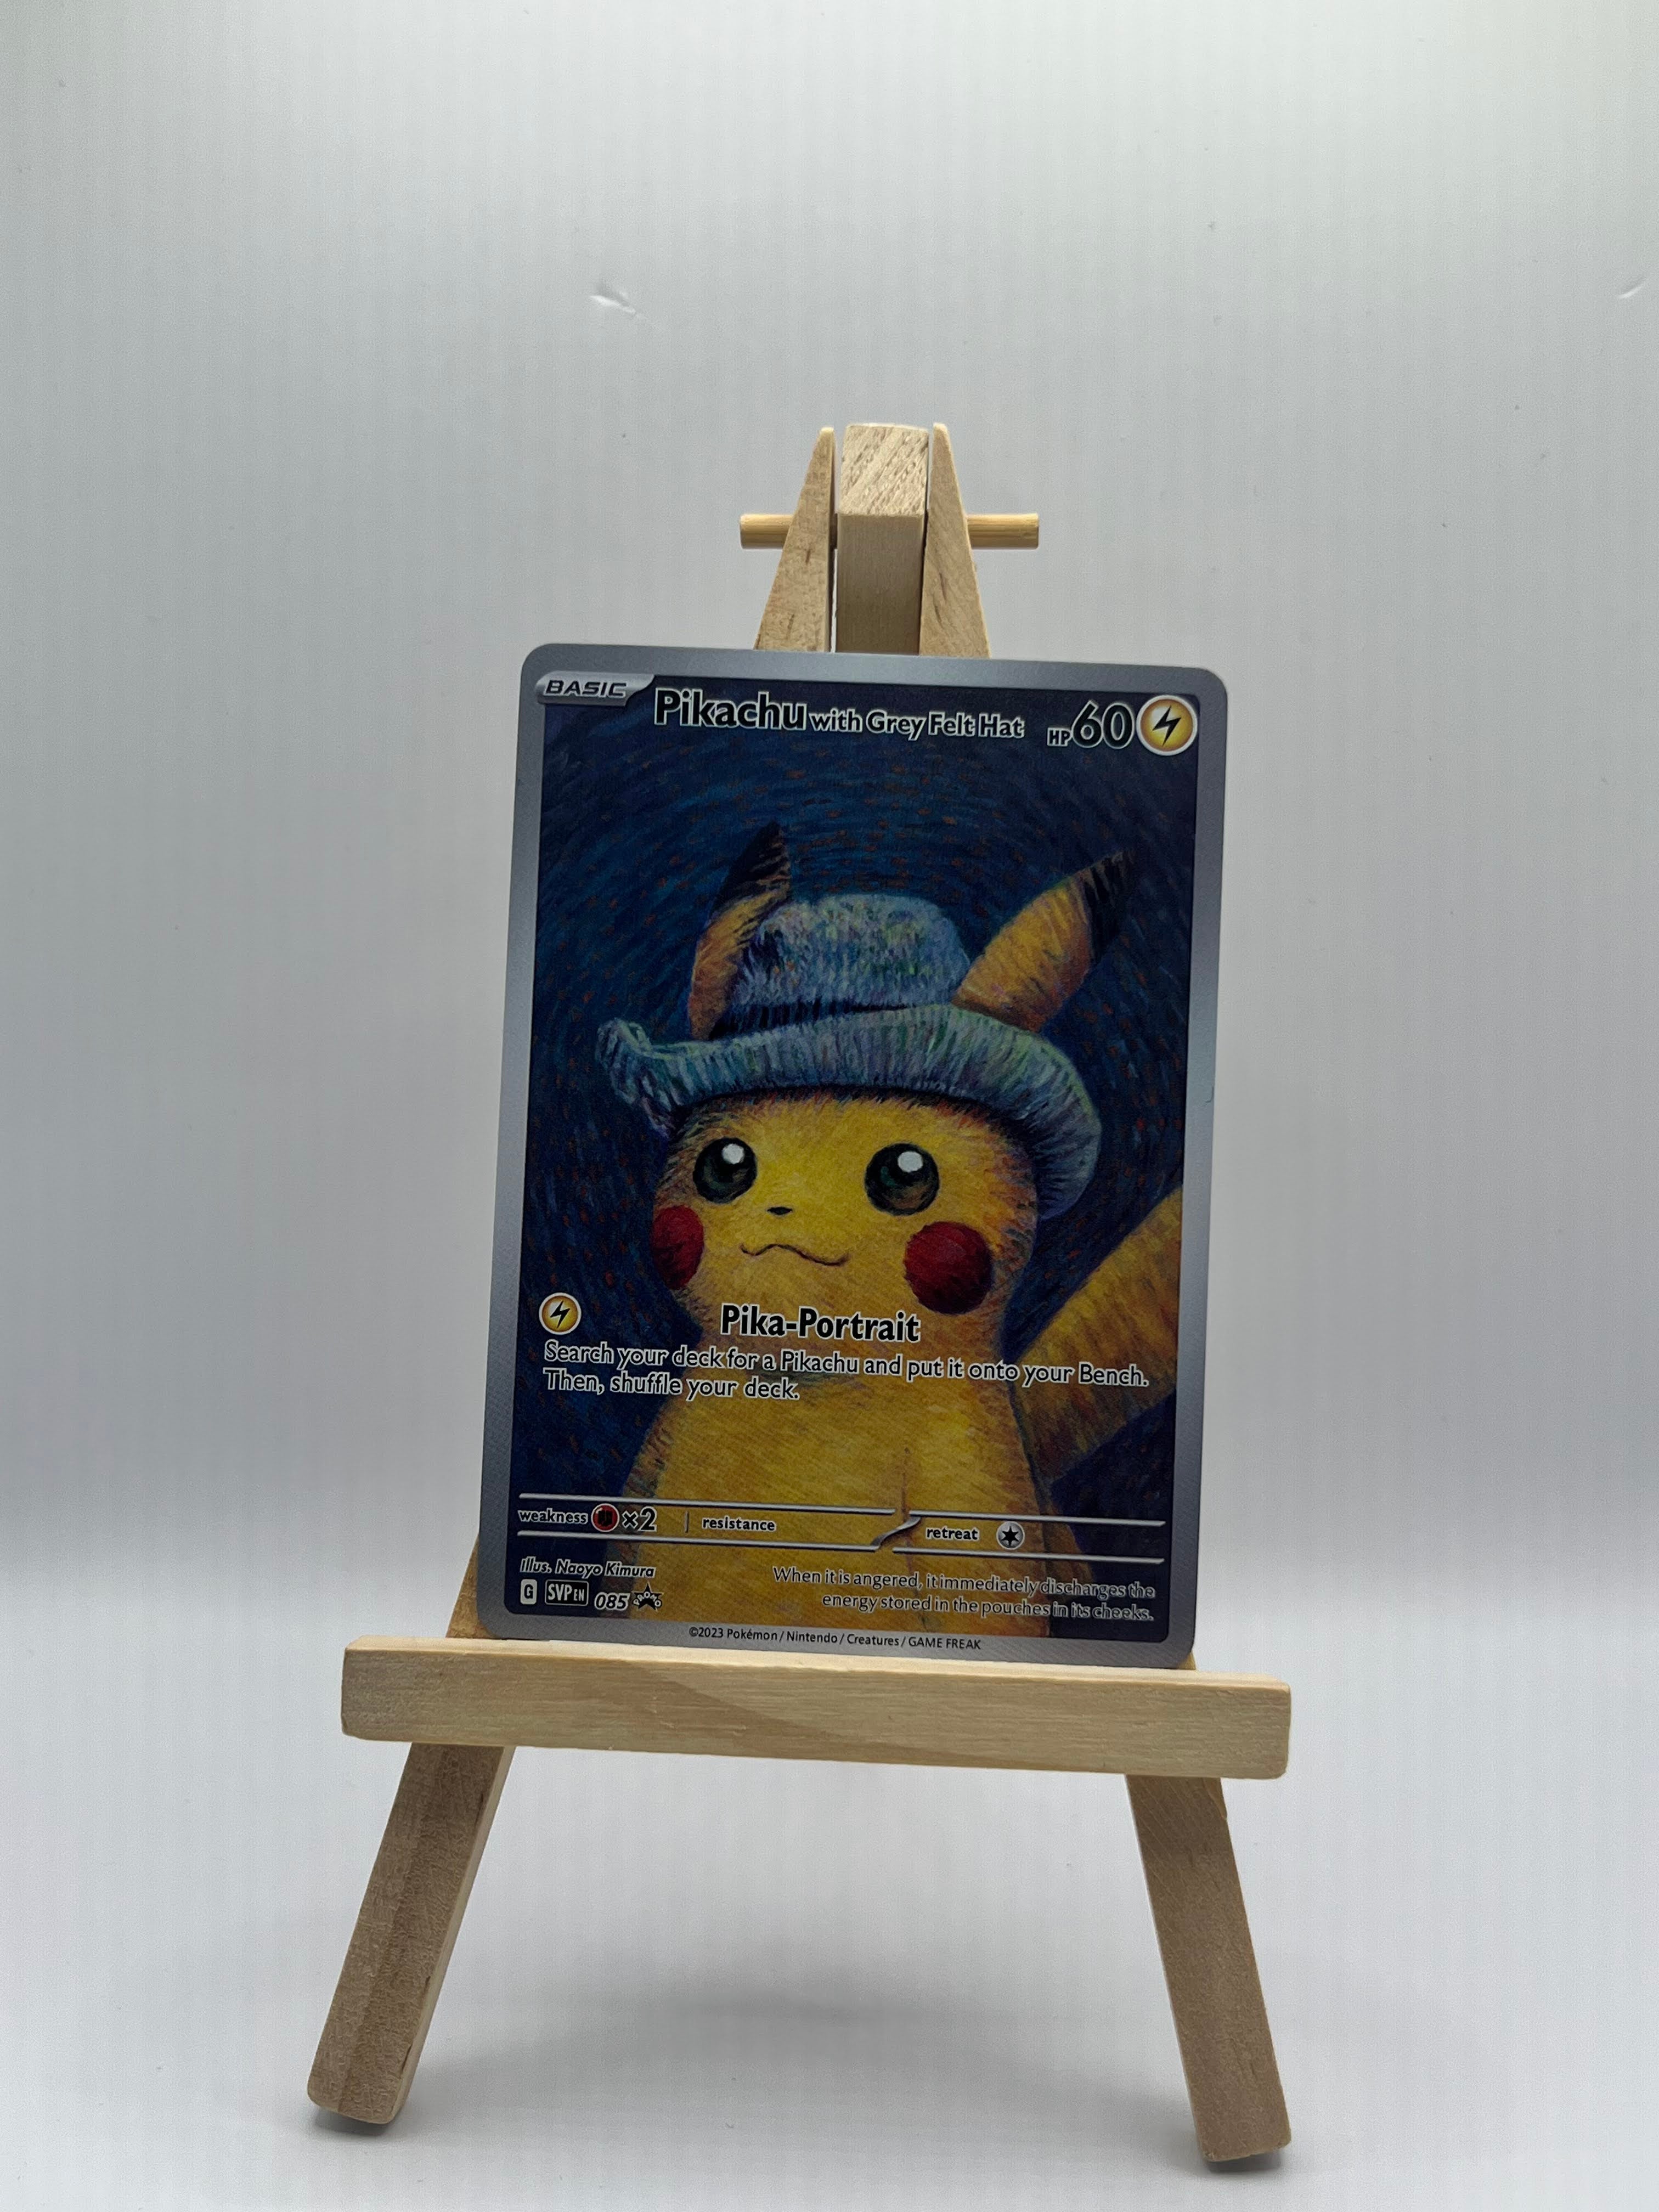 Pikachu with Grey Felt Hat - Scarlet & Violet Promos (SVP) #085